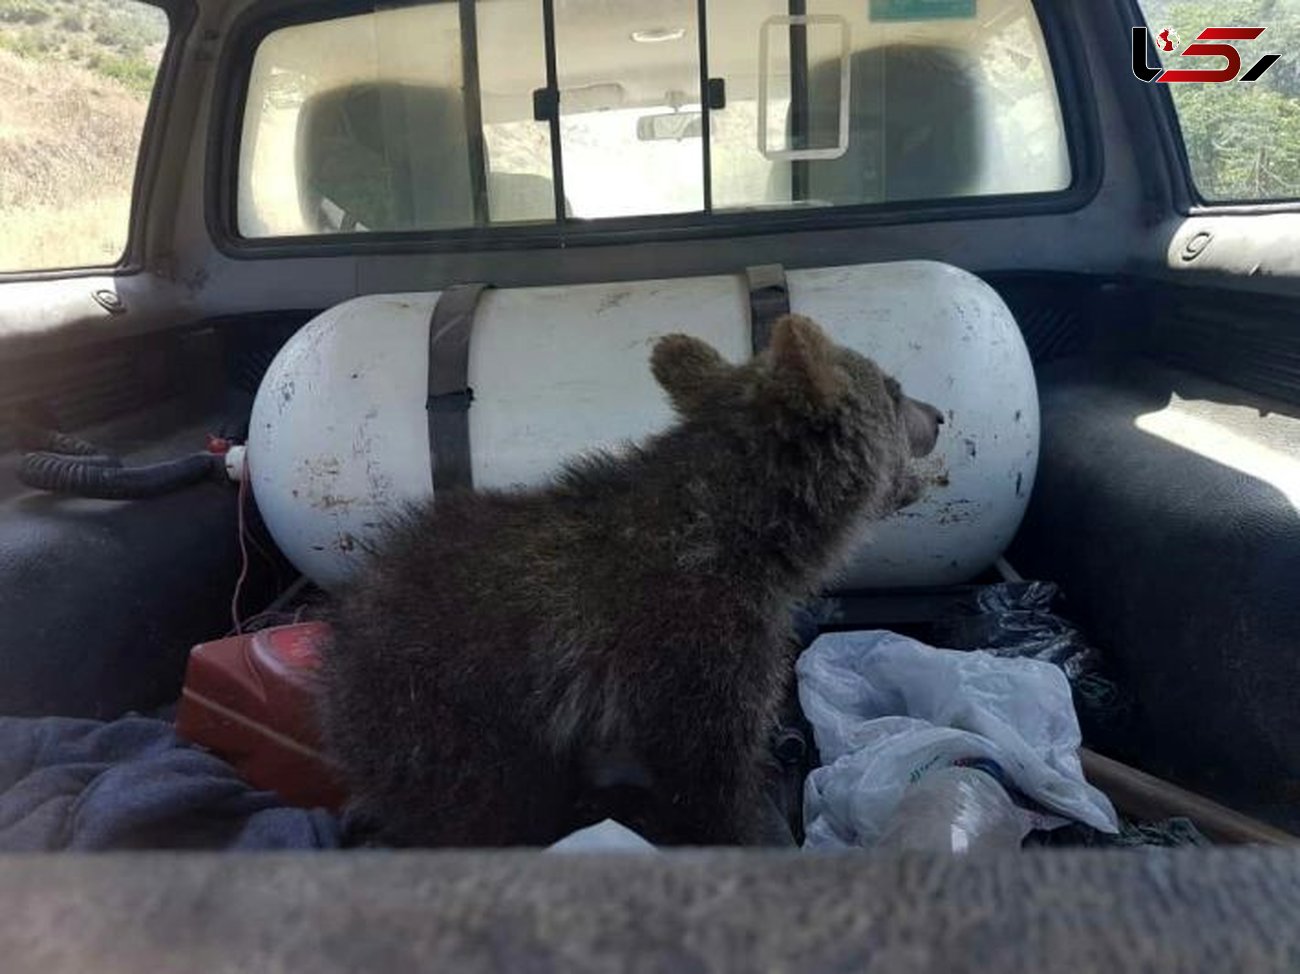 نجات توله خرس زخمی در گرگان + عکس